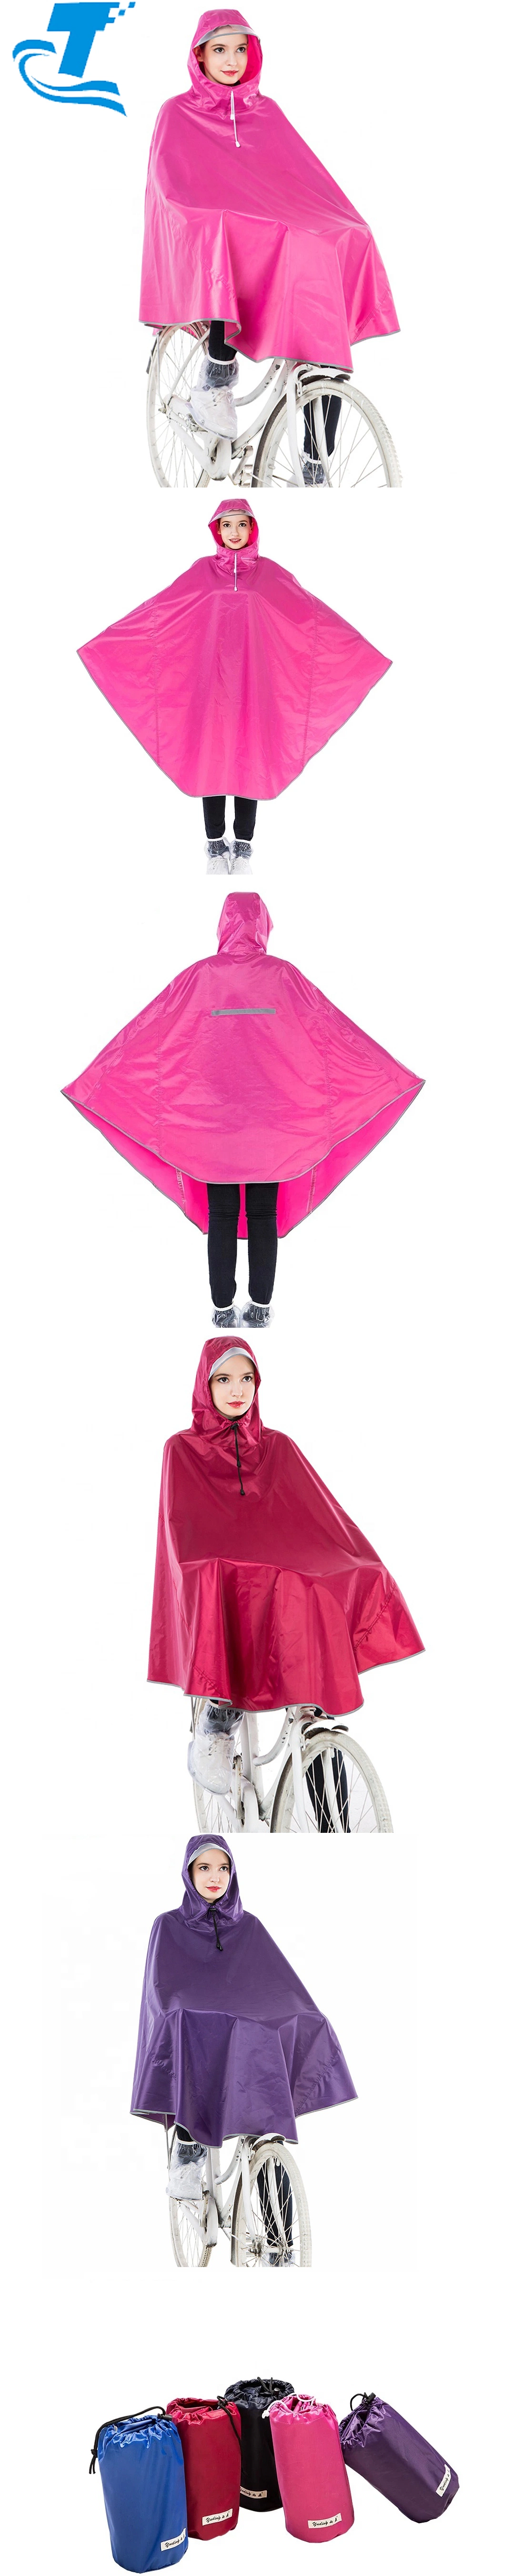 Hottest Lady Waterproof PVC Rain Coat Plus Size Hooded Rain Poncho for Bike Women Rain Wear